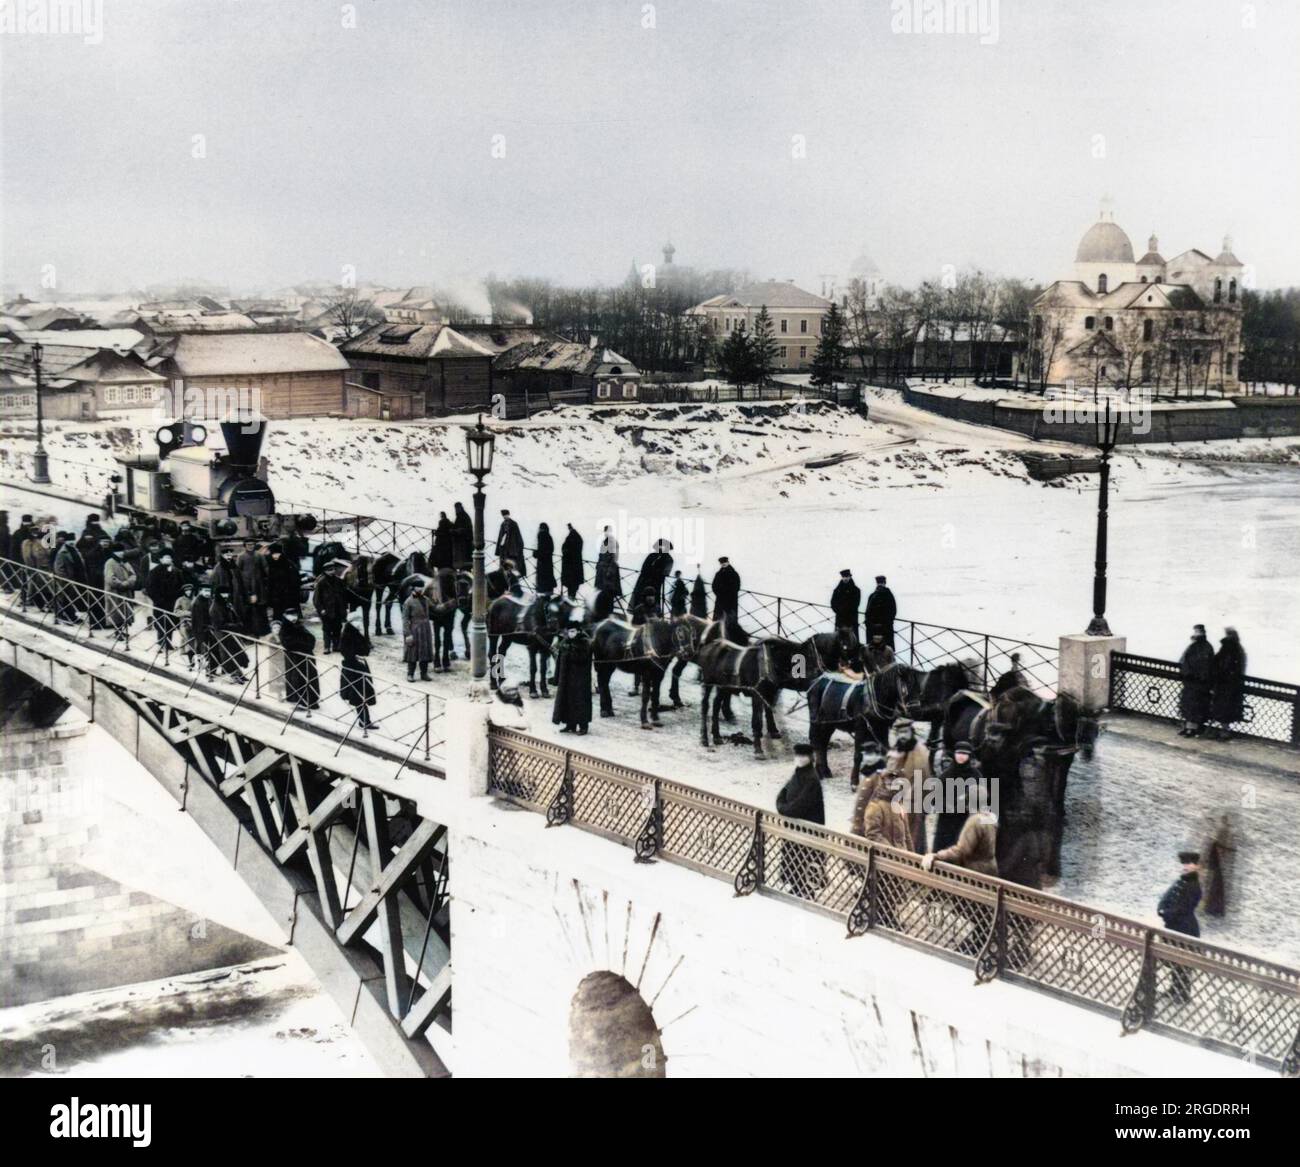 Vista di un ponte sul quale una locomotiva viene trainata da quattordici cavalli da consegnare alla linea Orlovsko-Kitebskaya. Folle di persone si sono riunite nella neve per guardarla passare. Foto Stock